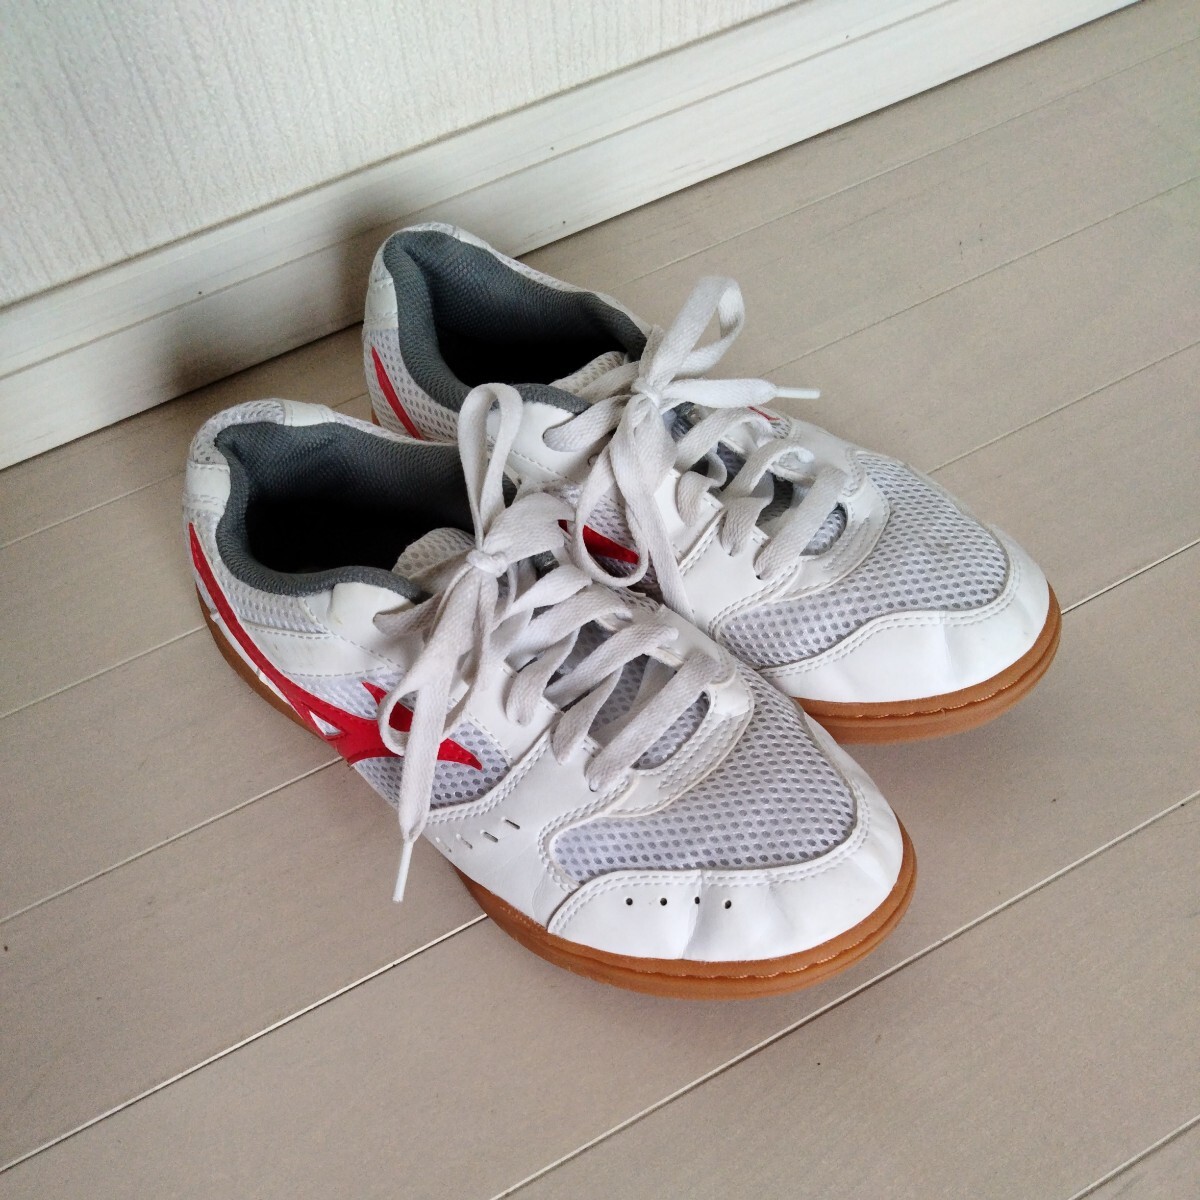  быстрое решение 2980 иен * средняя школа указание * женщина . физическая подготовка павильон обувь 24 см Mizuno MIZUNO б/у сменная обувь школьные туфли сверху обувь спортивные туфли купон использование .